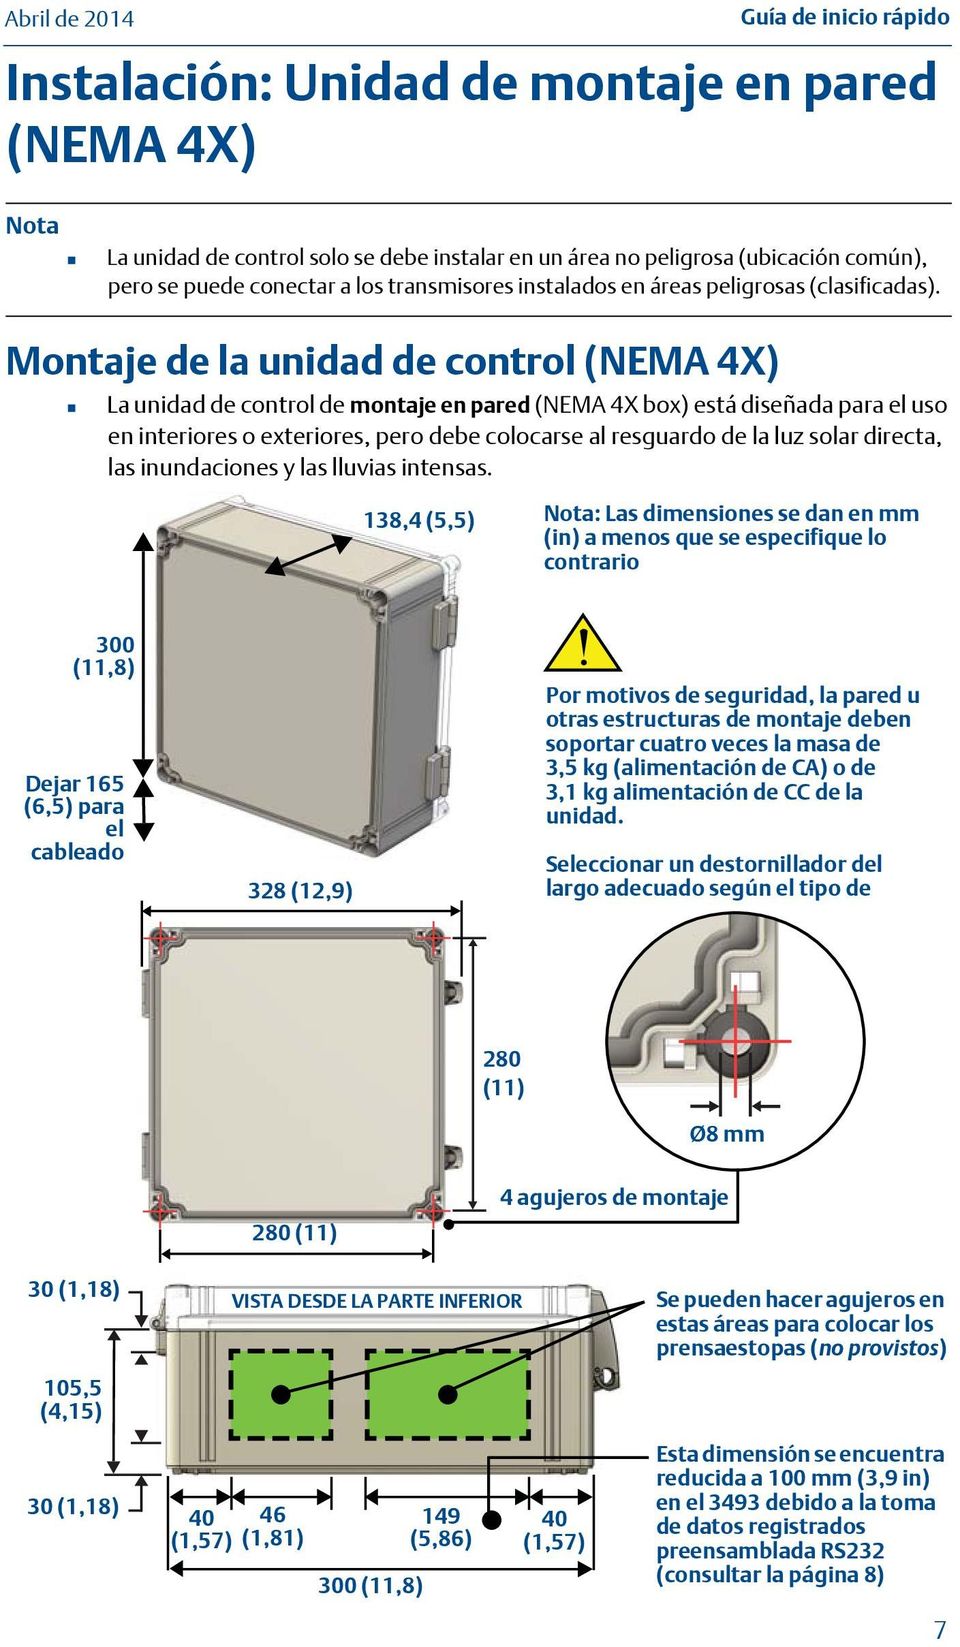 Montaje de la unidad de control (NEMA 4X) La unidad de control de montaje en pared (NEMA 4X box) está diseñada para el uso en interiores o exteriores, pero debe colocarse al resguardo de la luz solar